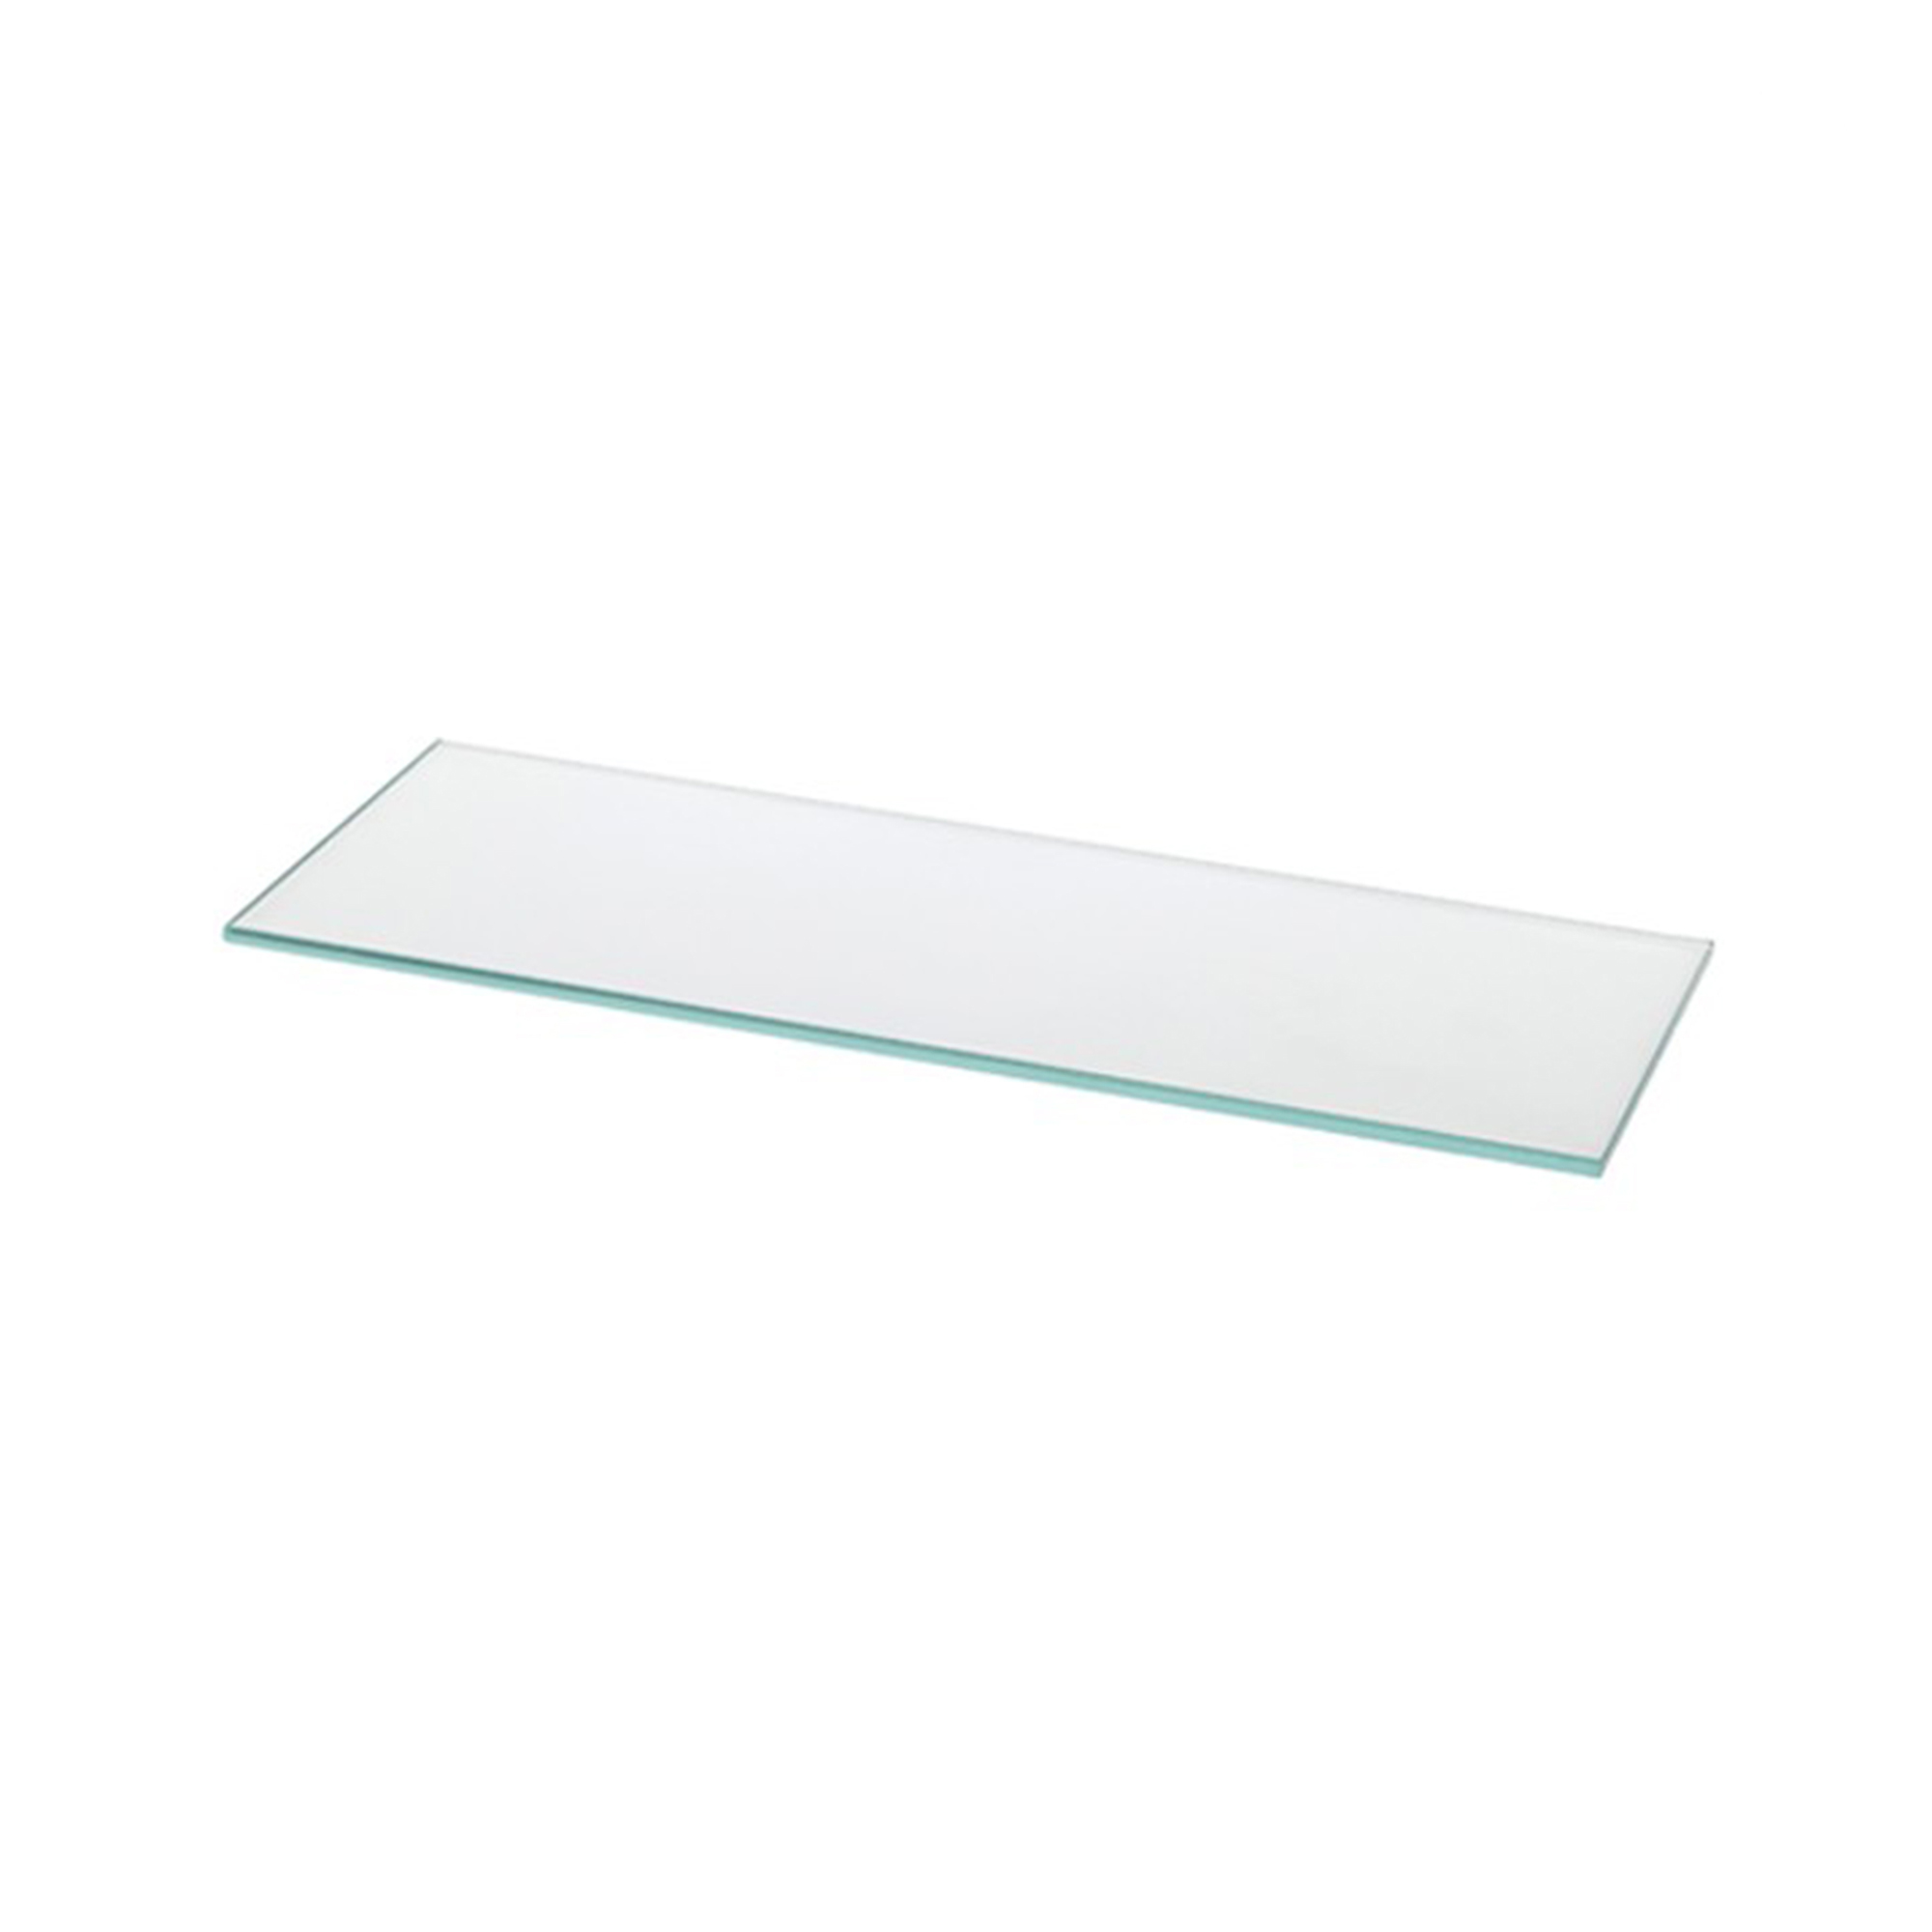 Étagère rectangulaire en verre transparente | Dimensions 700*6*200mm | Épaisseur de l'étagère : 6 mm | 1 unité